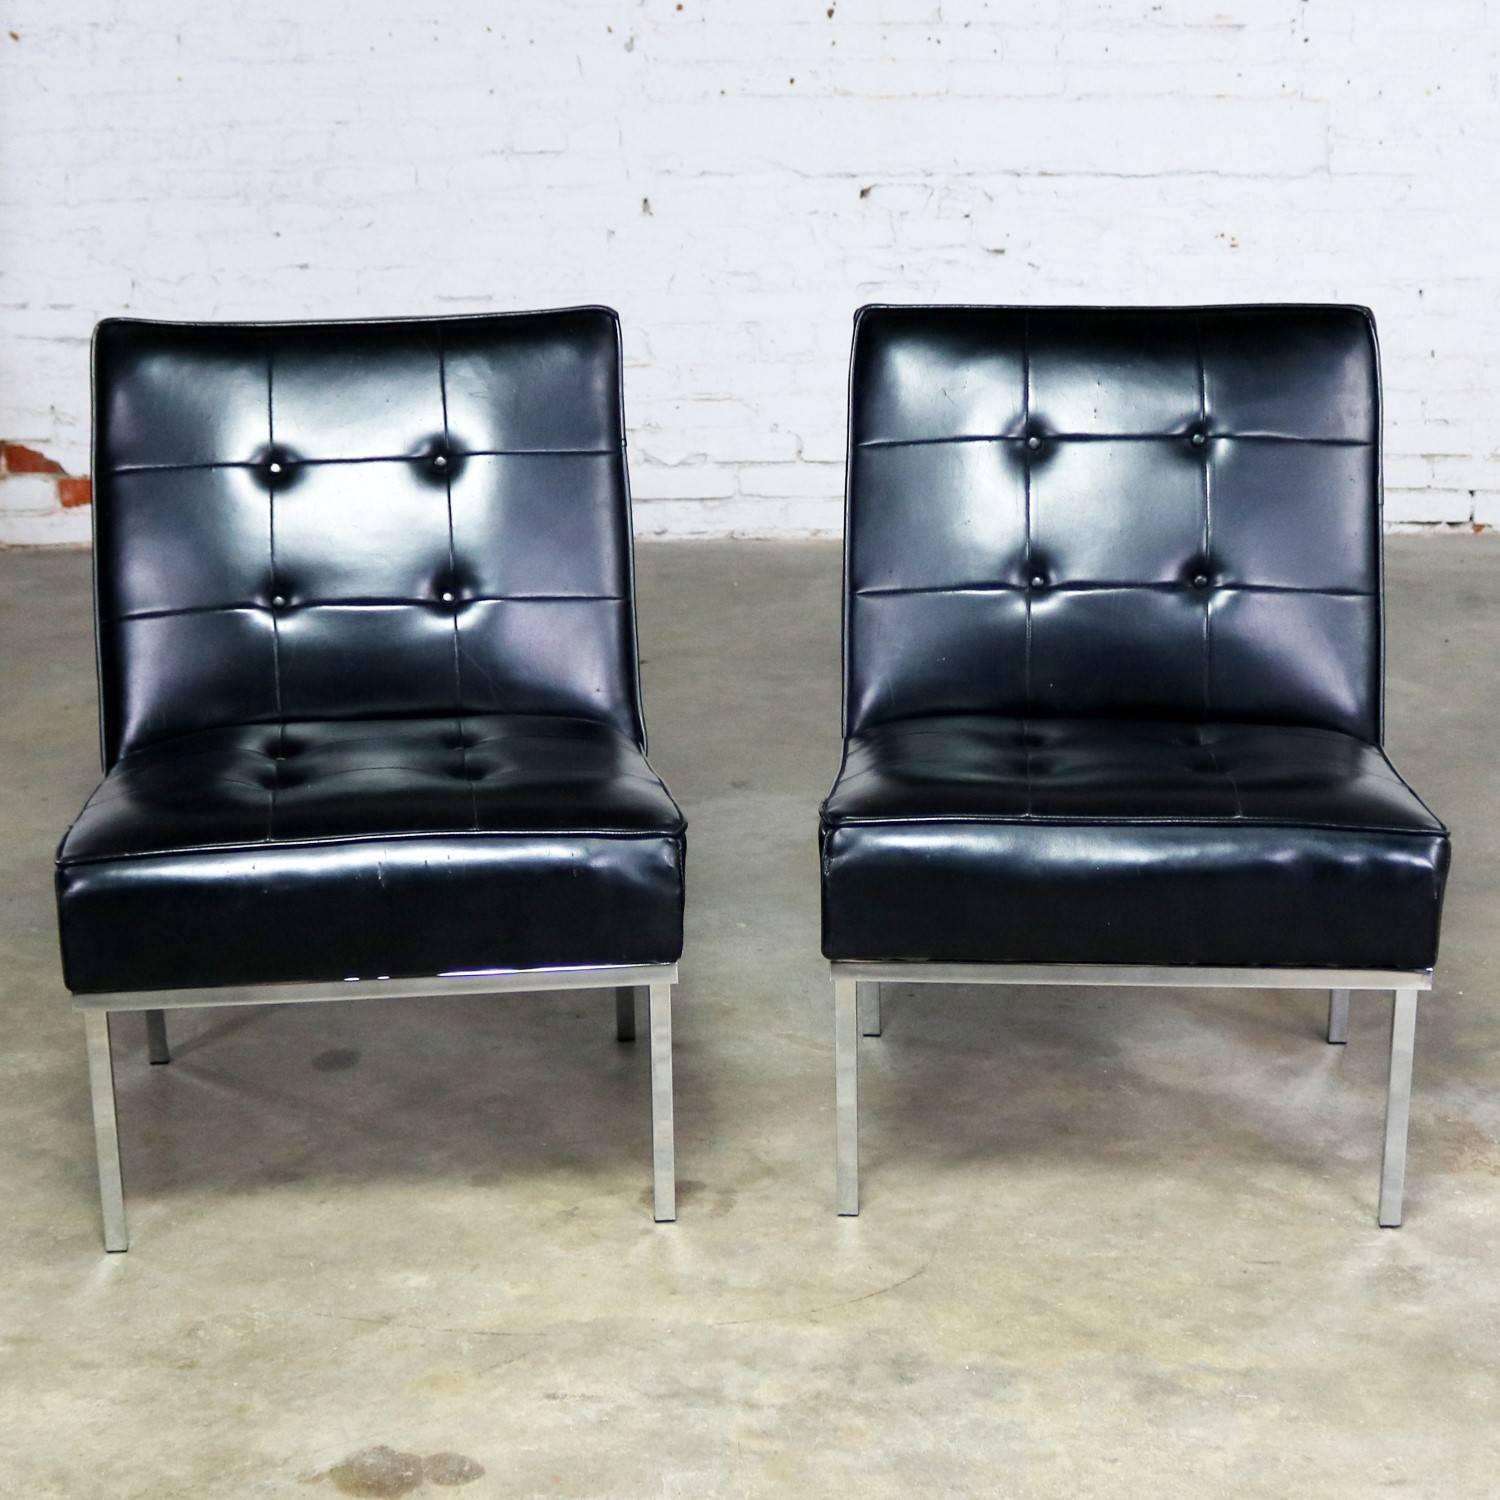 Awesome Paar Mid-Century Modern oder MCM Pantoffelstühle in schwarzem Kunstleder oder Naugahyde von Paoli Chair Co. im Stil von Florence Knoll gemacht. Originaletikett an einem Stuhl von 1968. Sie sind in gutem Originalzustand. Es gibt ein paar